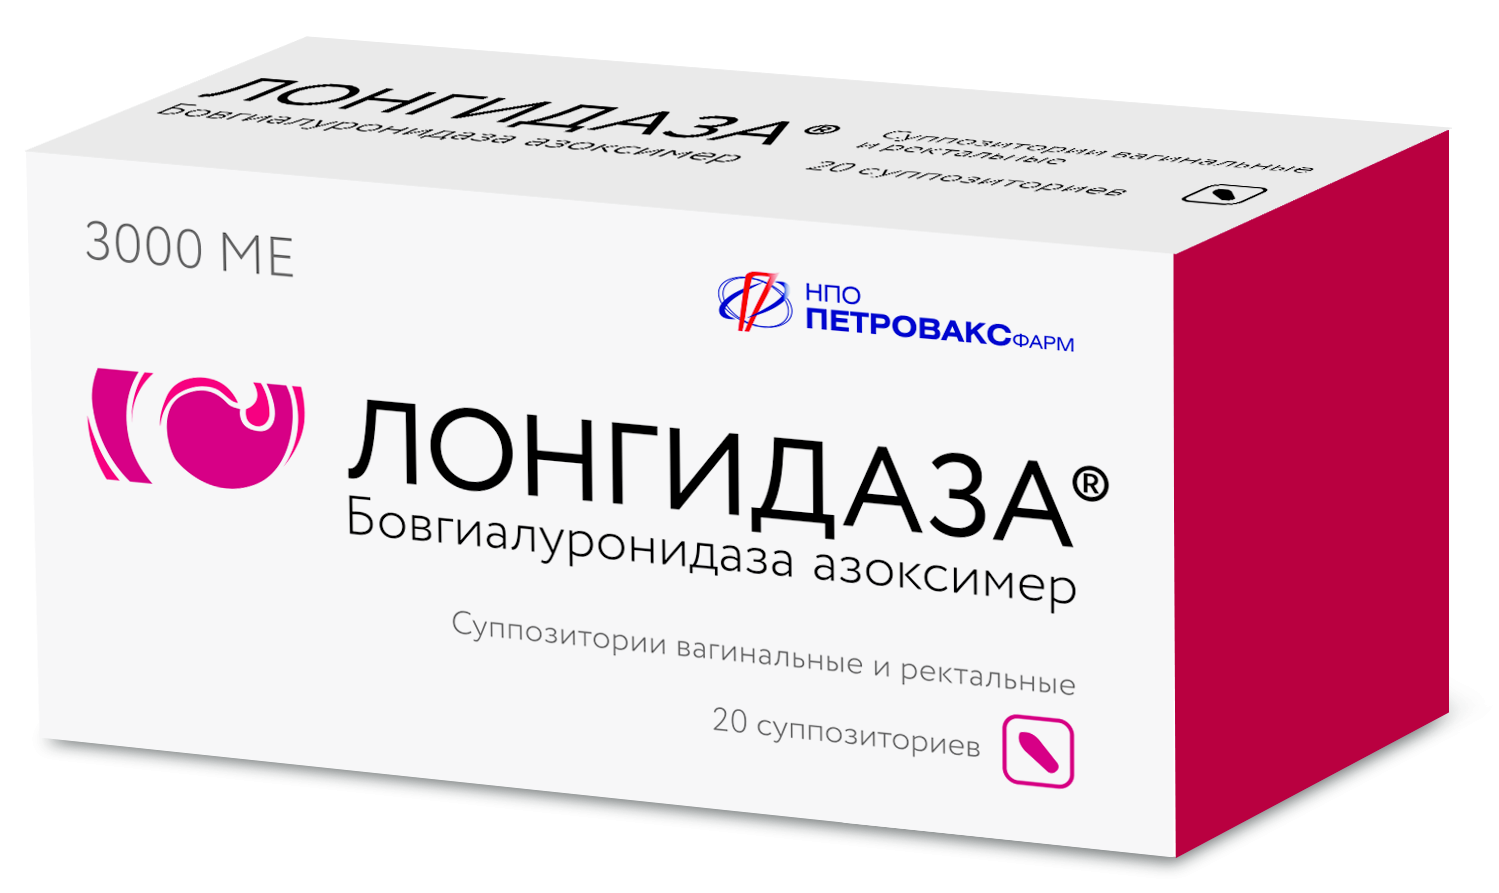 Российский оригинальный препарат «Лонгидаза®» запатентован в Европе